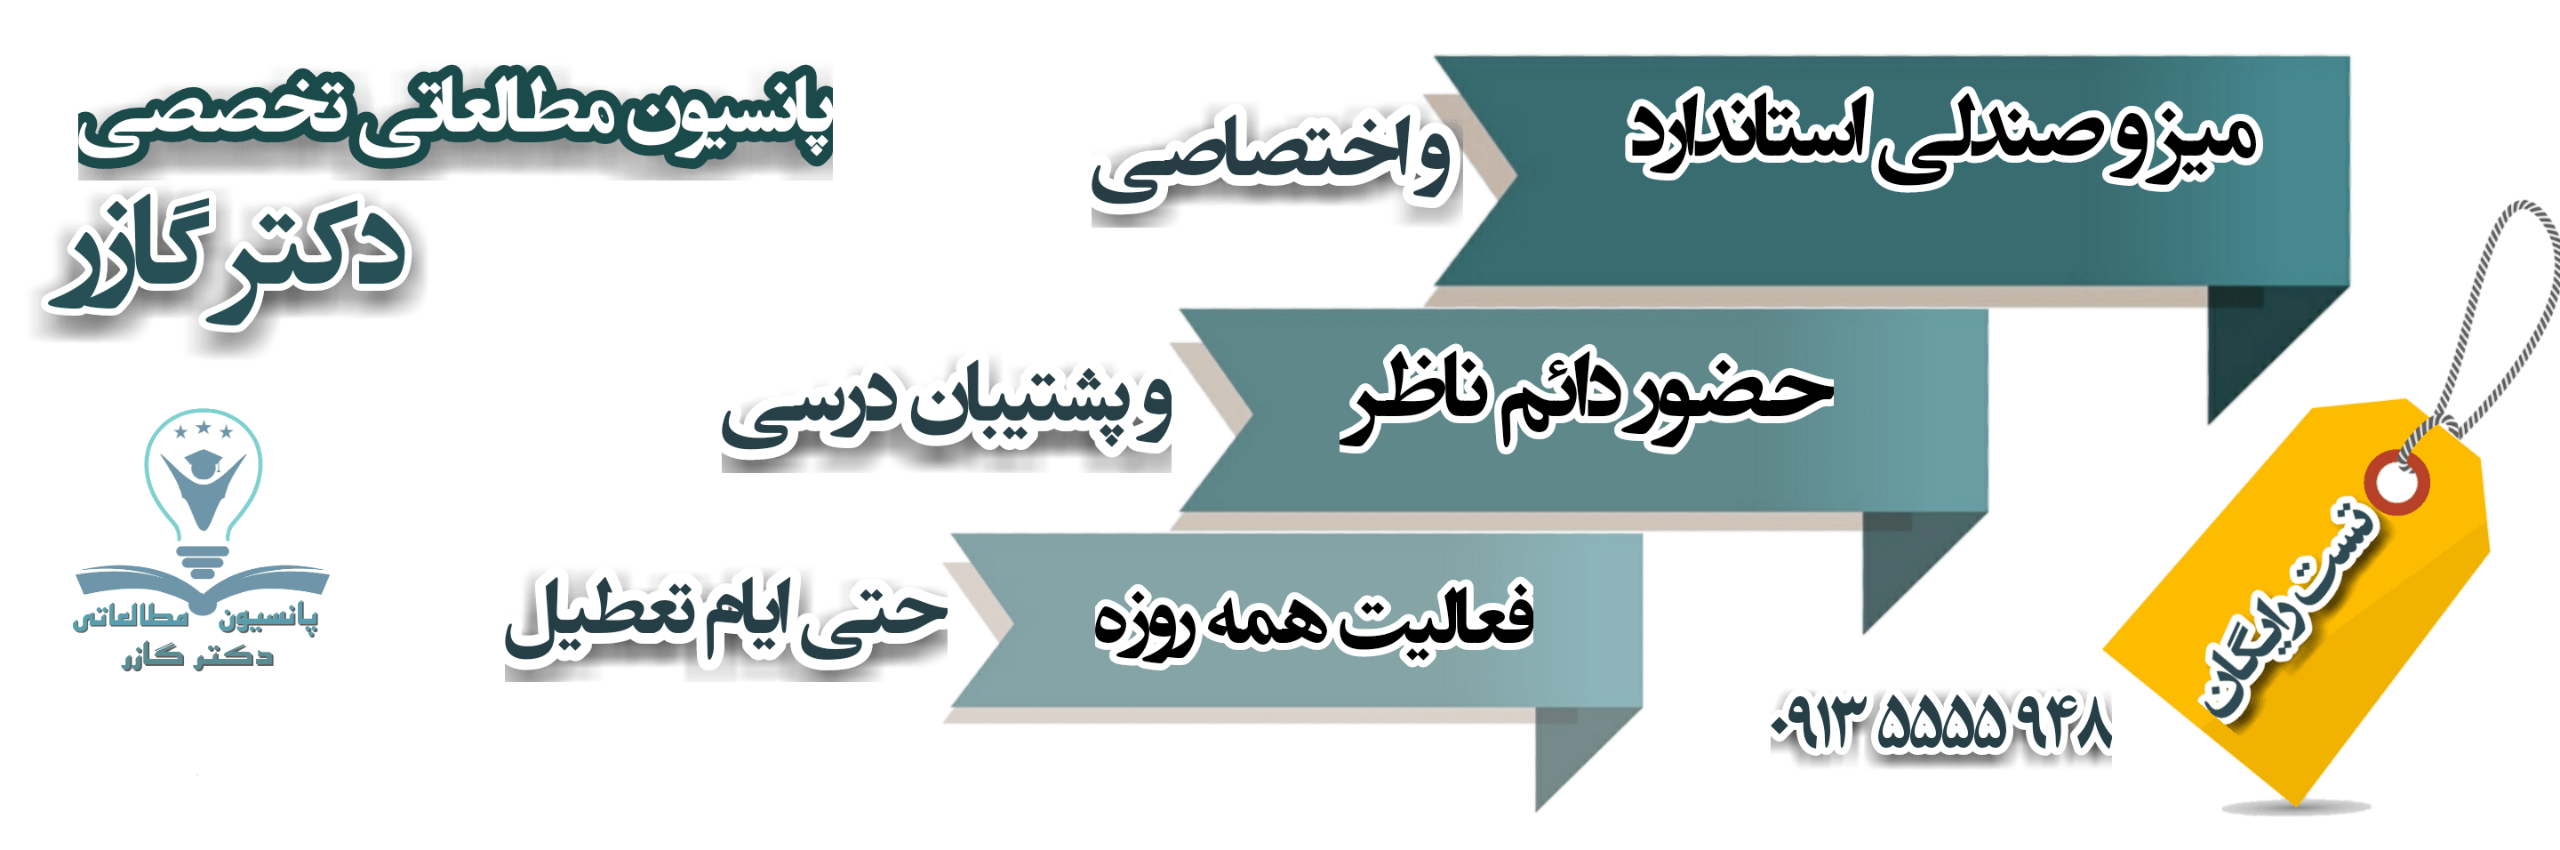 پانسیون مطالعاتی در اصفهان